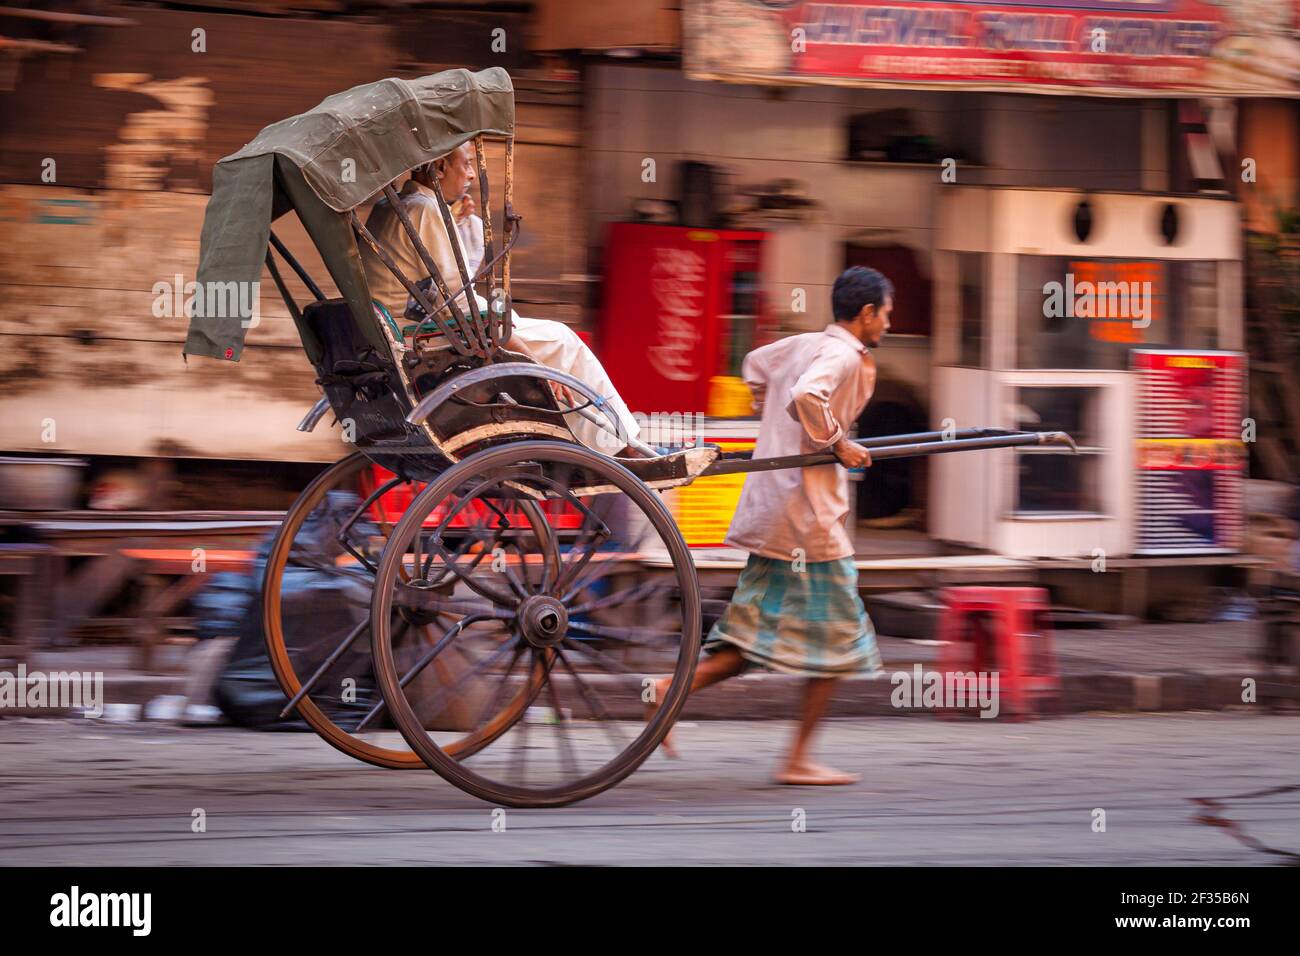 man-pulled-rickshaw-with-passenger-kolkata-west-bengal-india-2F35B6N.jpg